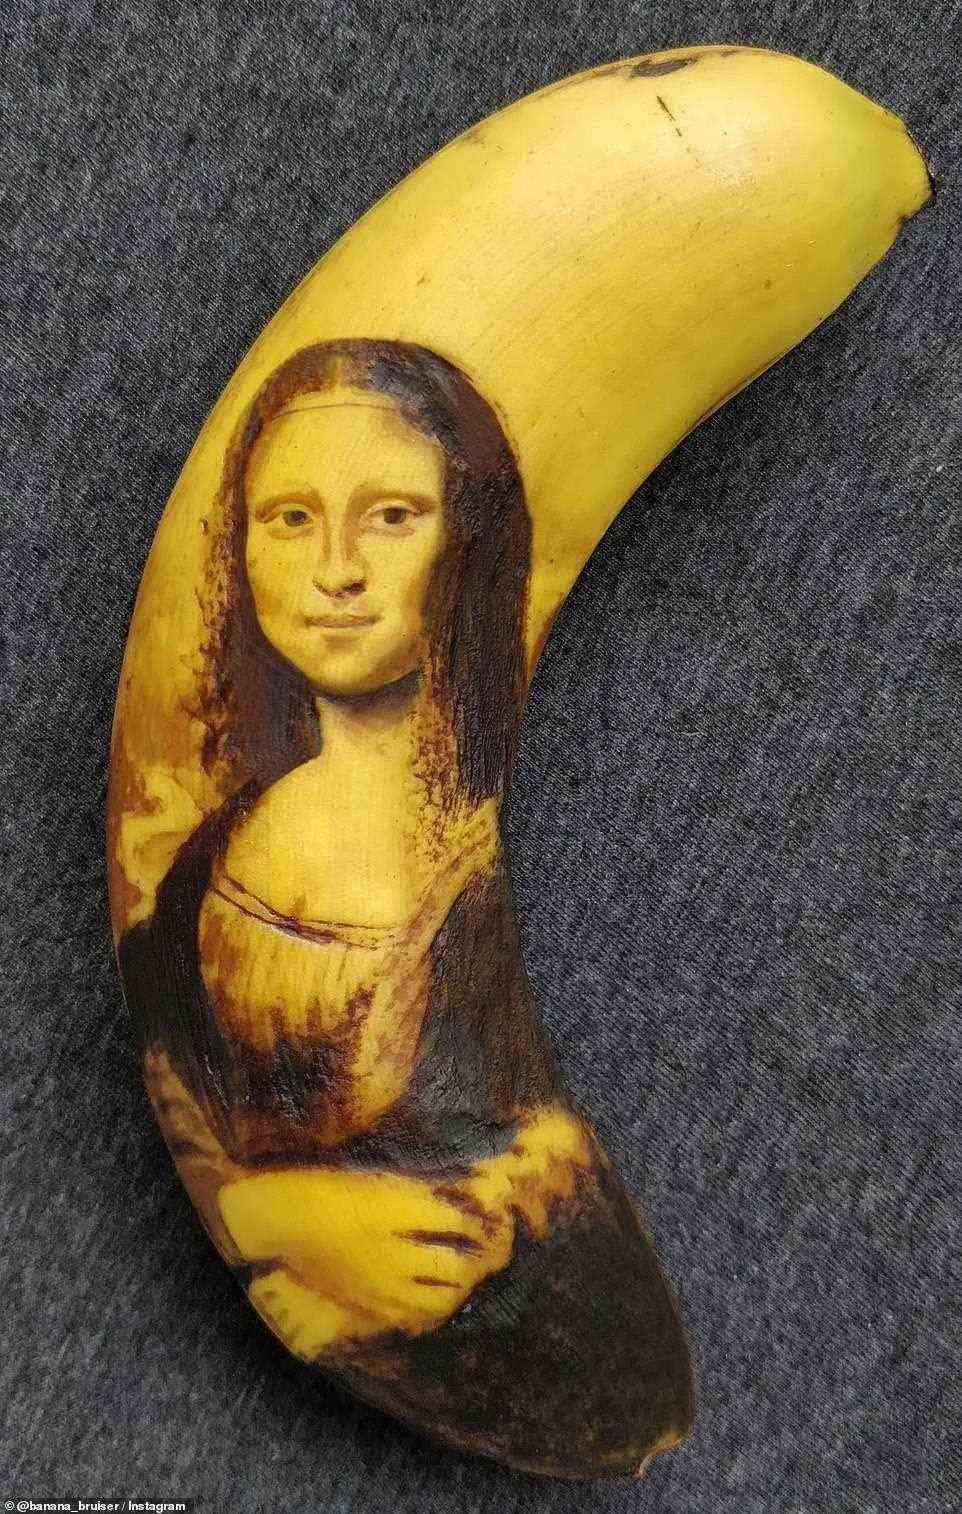 Meisterwerk: Das rätselhafte Lächeln auf Leonardo da Vincis Gemälde ist mehr als oberflächlich.  Gequetschte Bananen sind normalerweise nicht besonders ansprechend.  Aber dieser Haufen kunstvoll verunstalteter Schönheiten ist Tausenden von Bewunderern weltweit unter die Haut gegangen